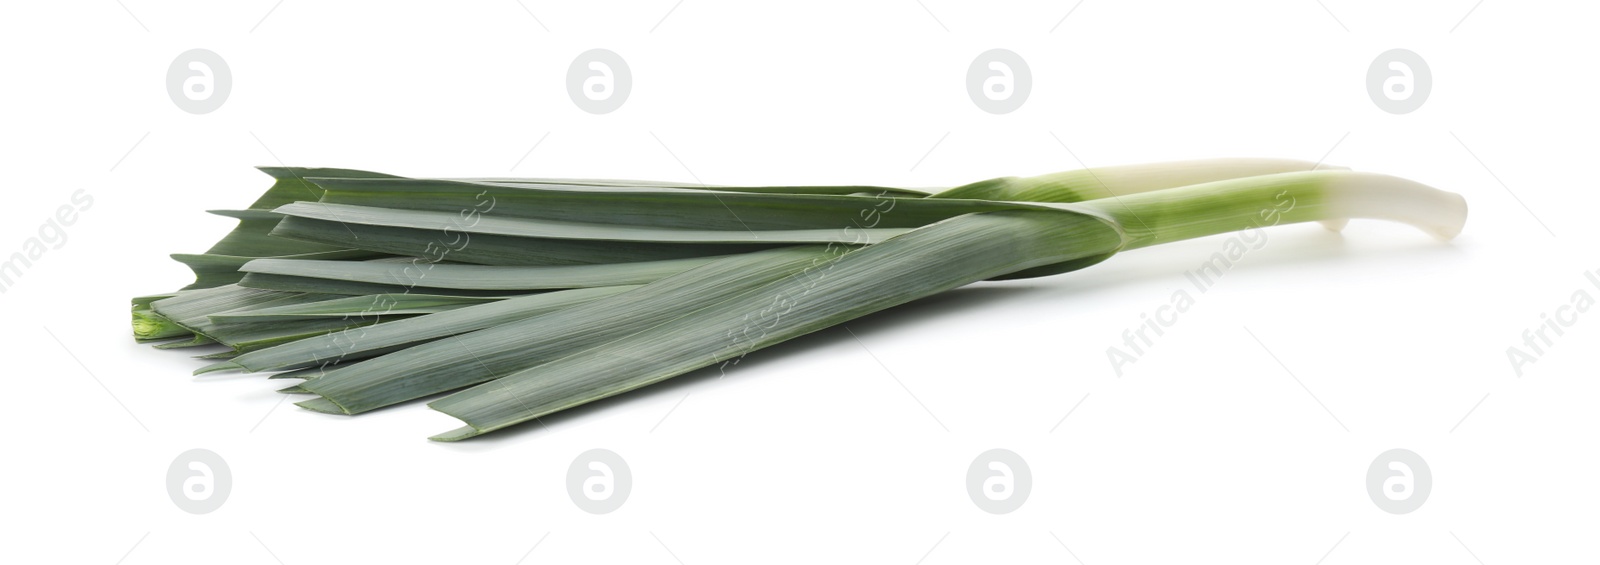 Photo of Fresh raw leek isolated on white. Ripe onion